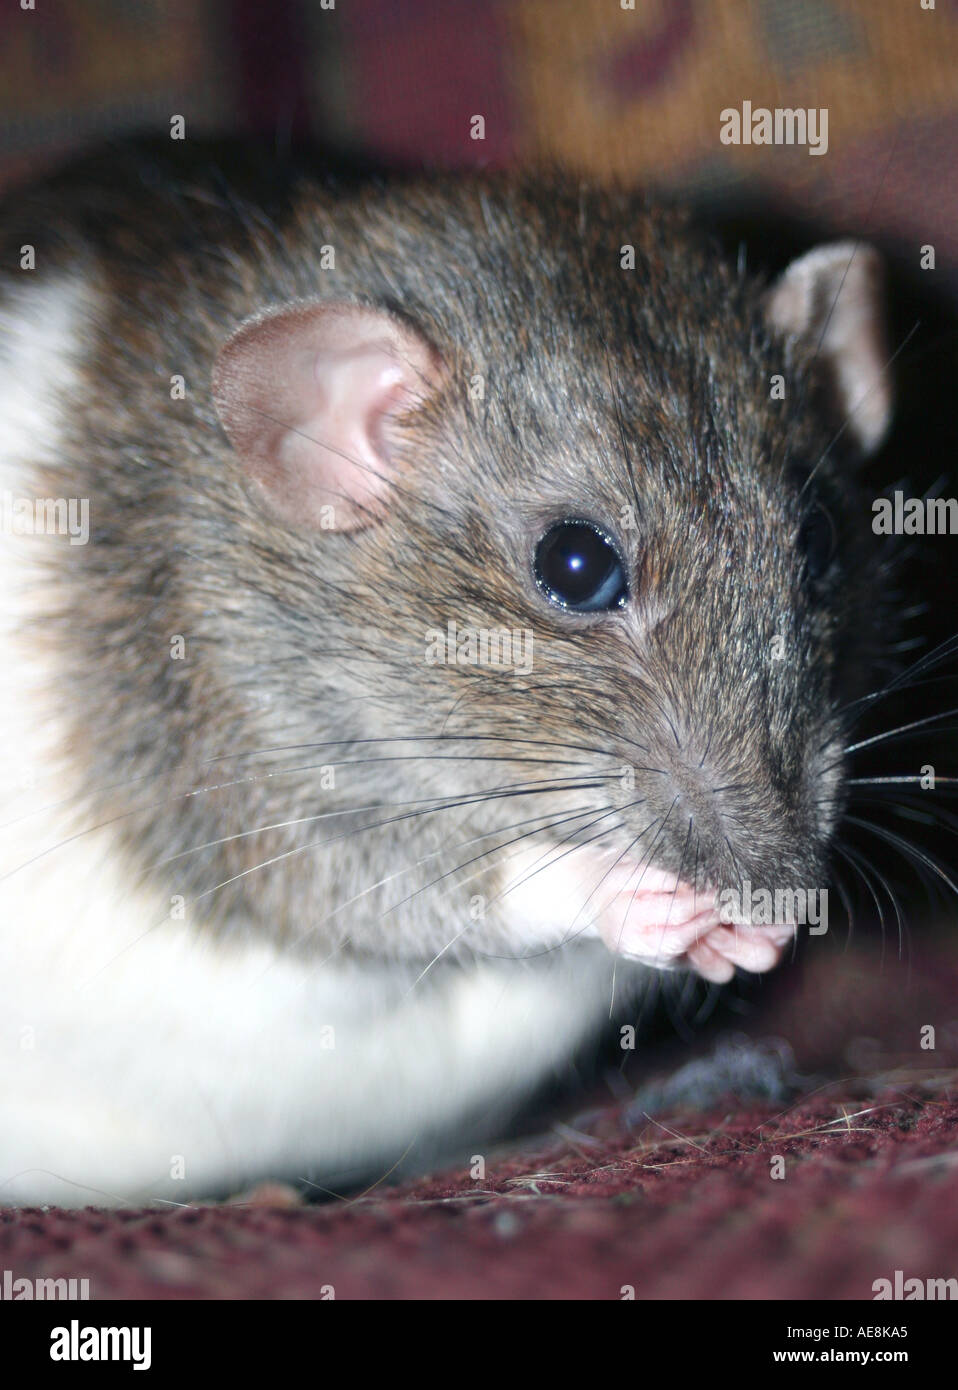 Grigio bianco rat essendo alimentato a trattare, rattie, grigio ratto, collezionismo, lunga coda di collezionismo, pet rat Foto Stock